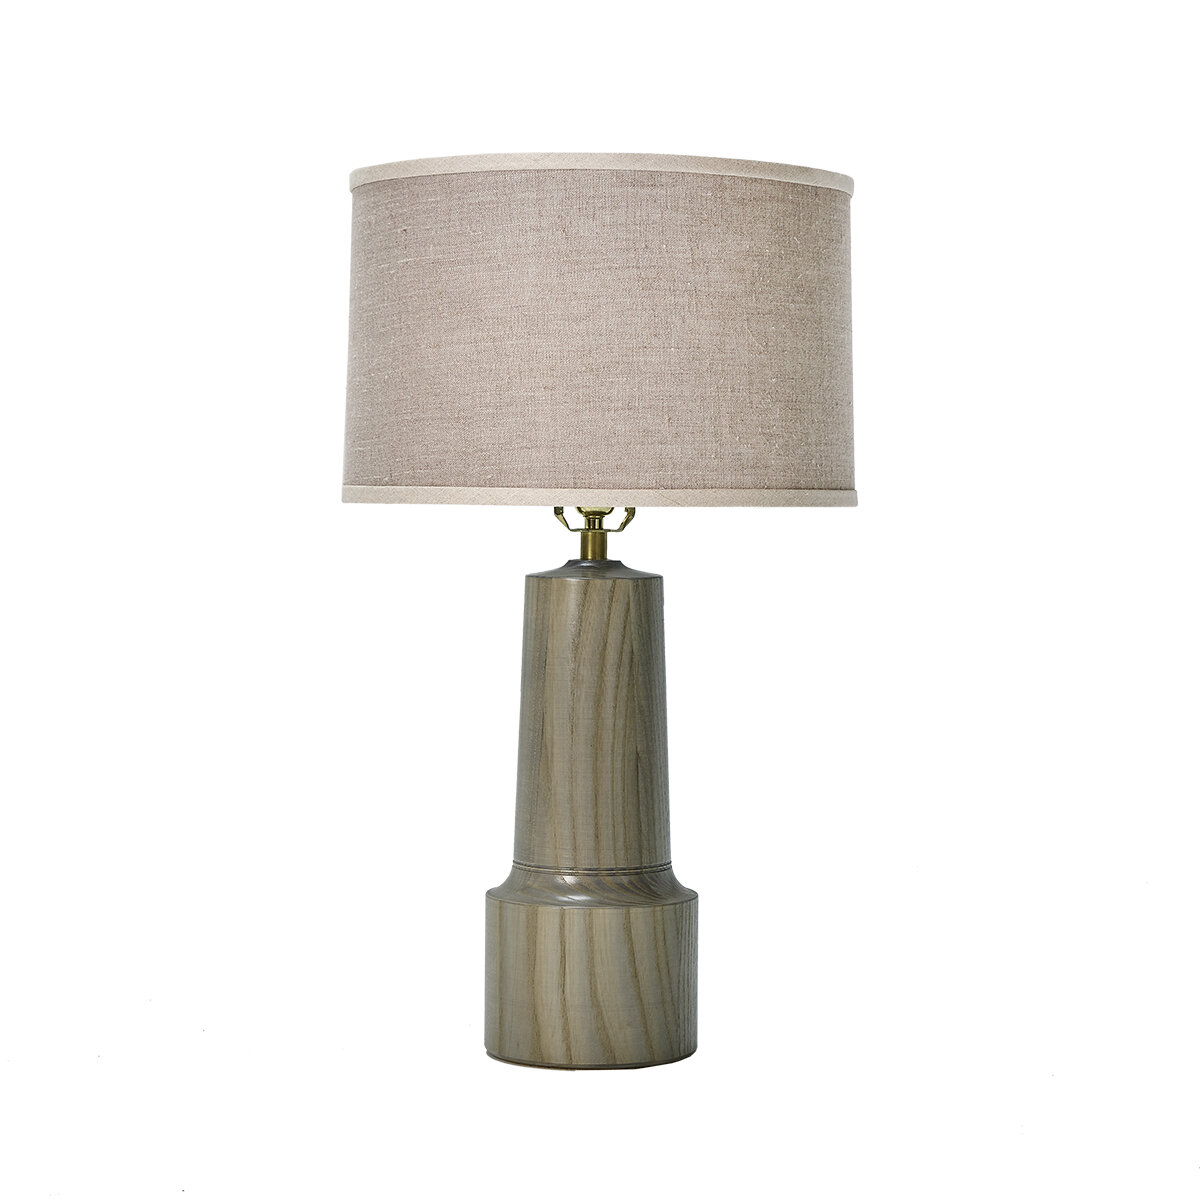 SOMERSET LAMP - $740